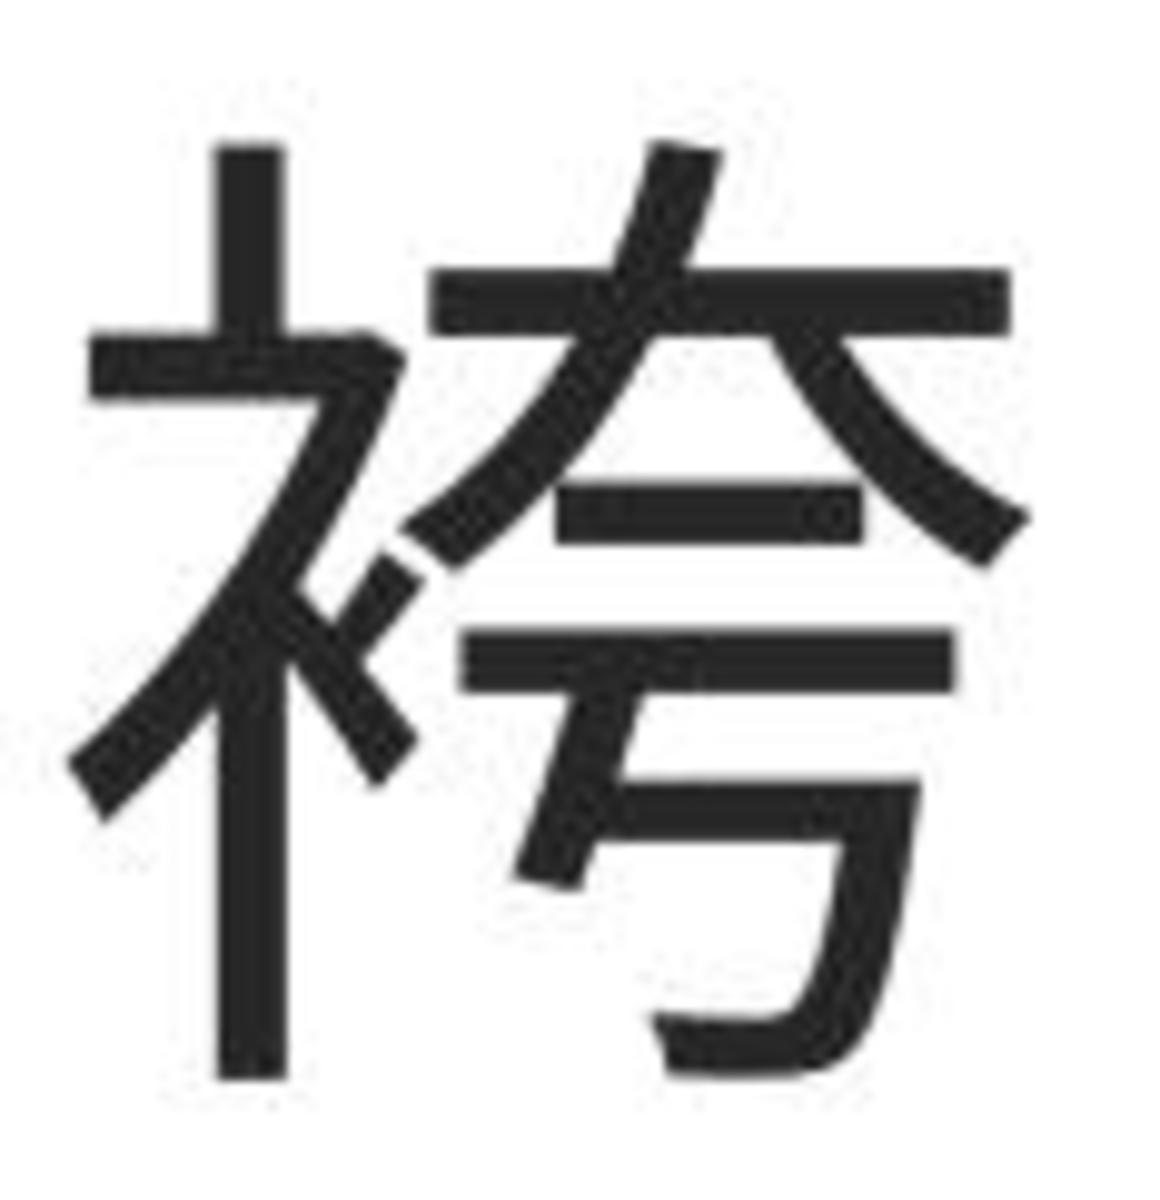 Hakama in kanji